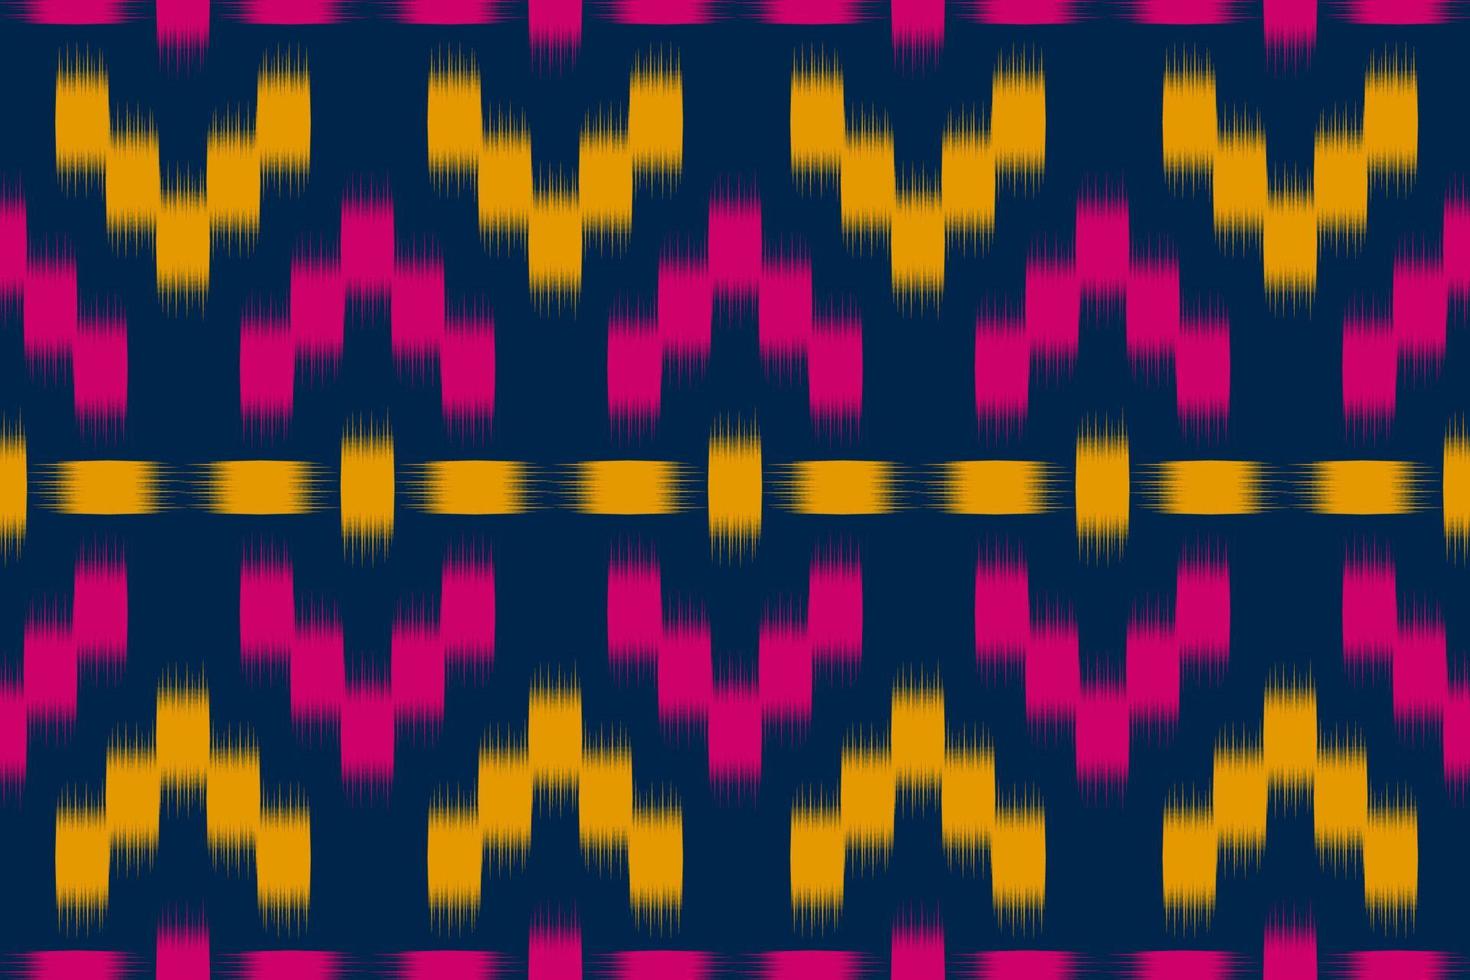 Stoff-Ikat-Musterkunst. geometrisches ethnisches nahtloses muster traditionell. amerikanischer, mexikanischer Stil. vektor